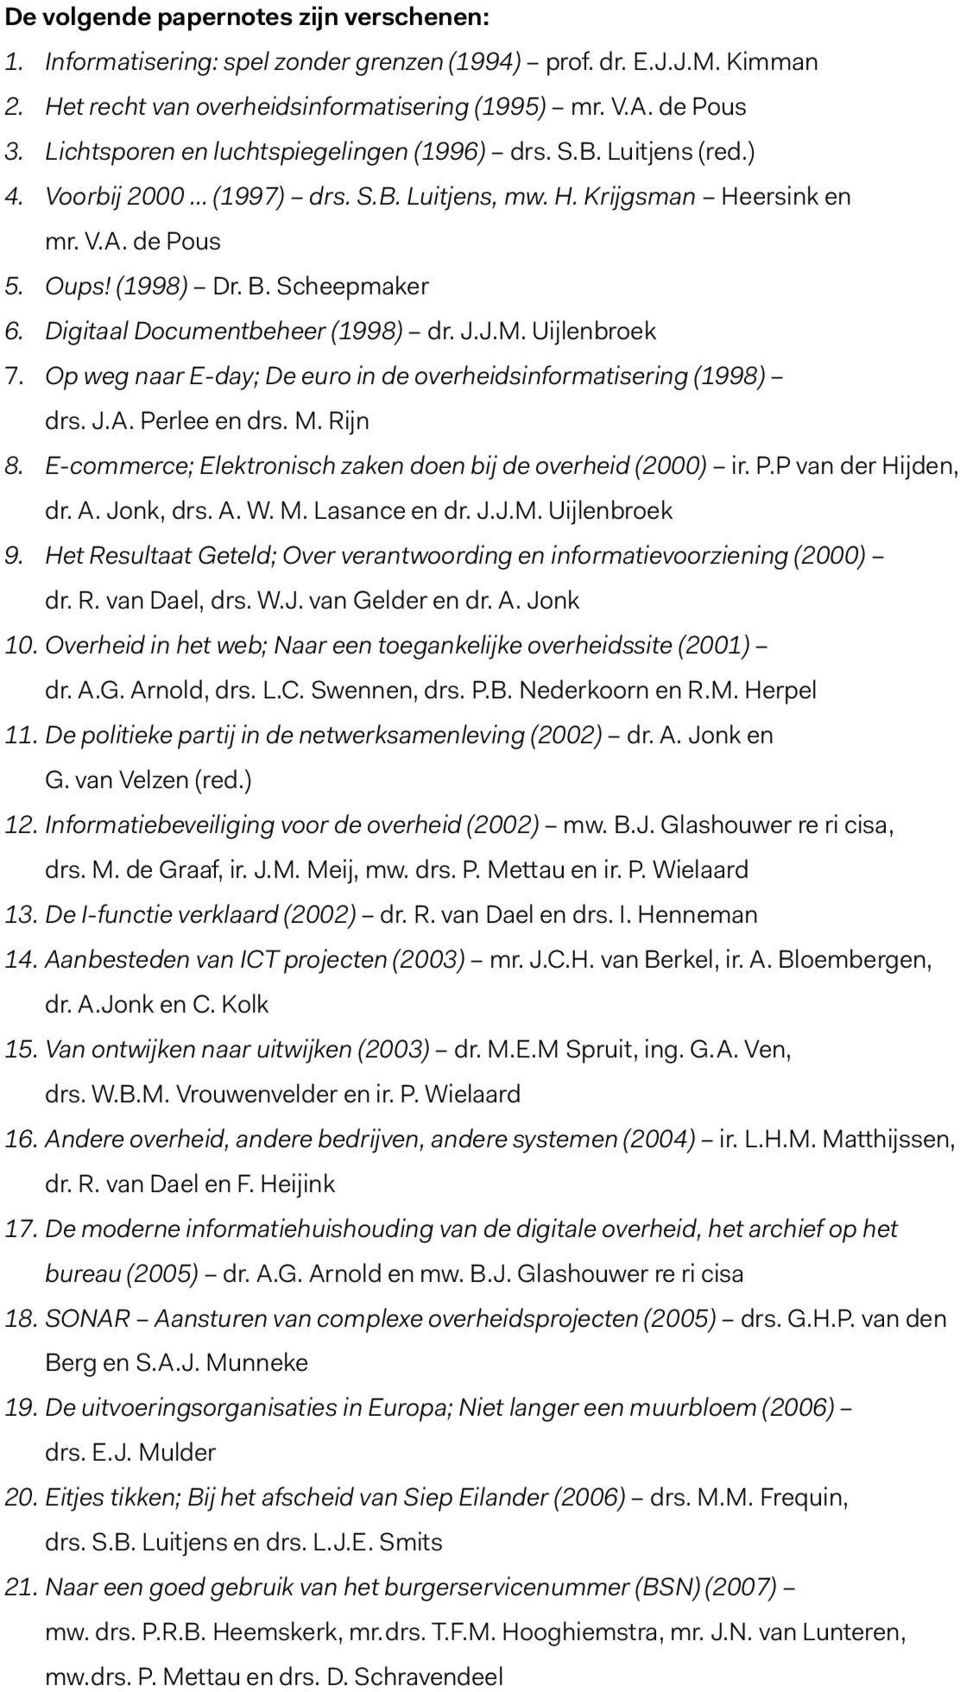 Digitaal Documentbeheer (1998) dr. J.J.M. Uijlenbroek 7. Op weg naar E-day; De euro in de overheidsinformatisering (1998) drs. J.A. Perlee en drs. M. Rijn 8.